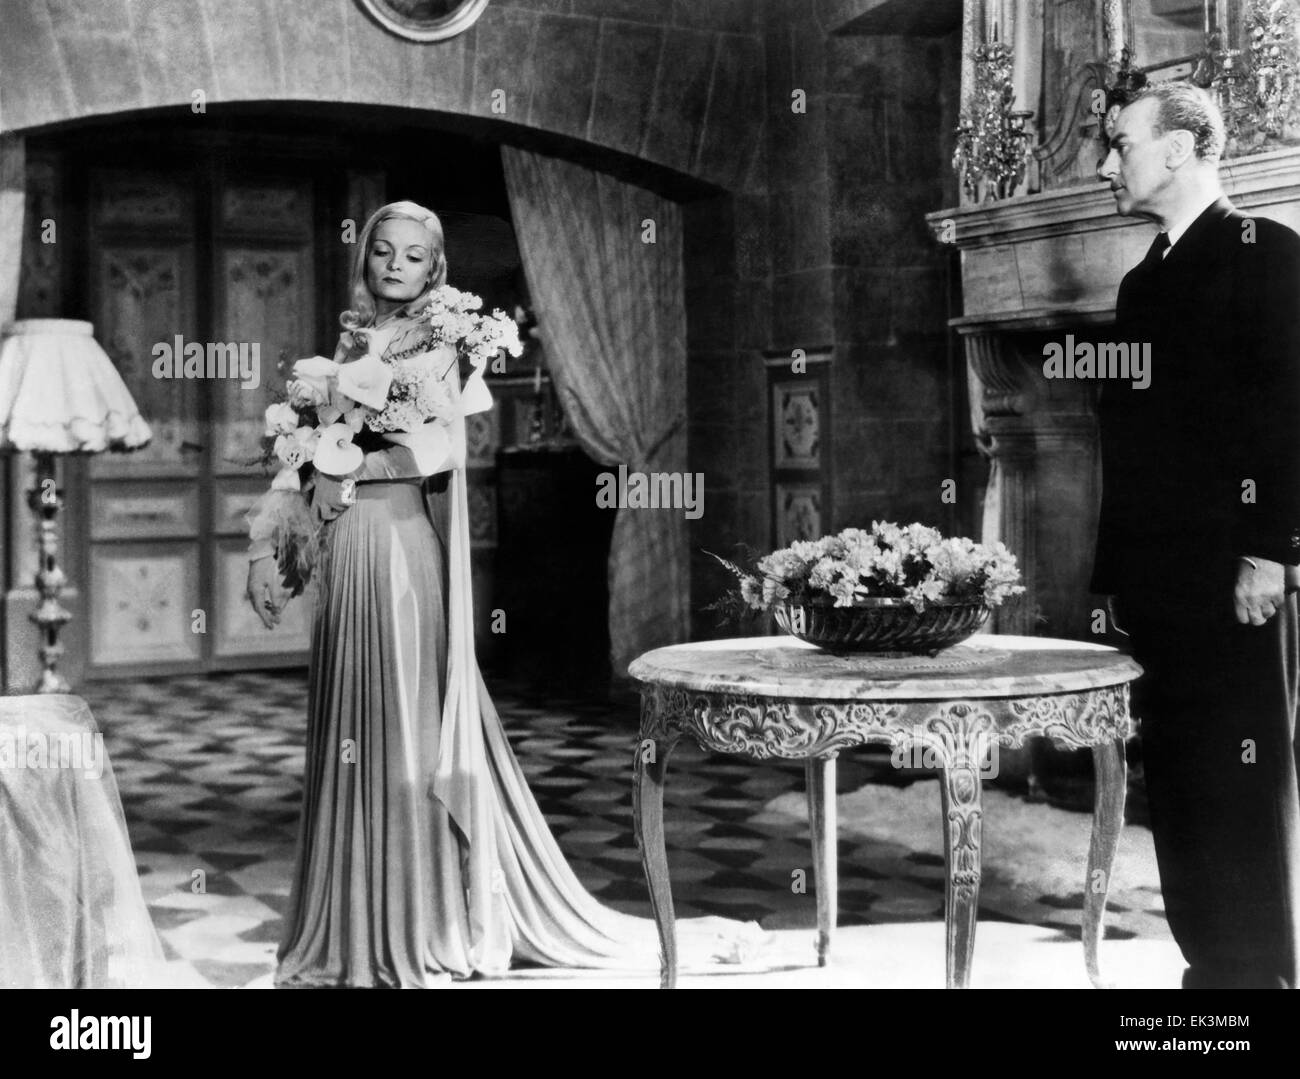 Madeleine Sologne, sur-ensemble du film "amour éternel" (aka L'Eternel retour, alias l'éternel retour), 1943 Banque D'Images